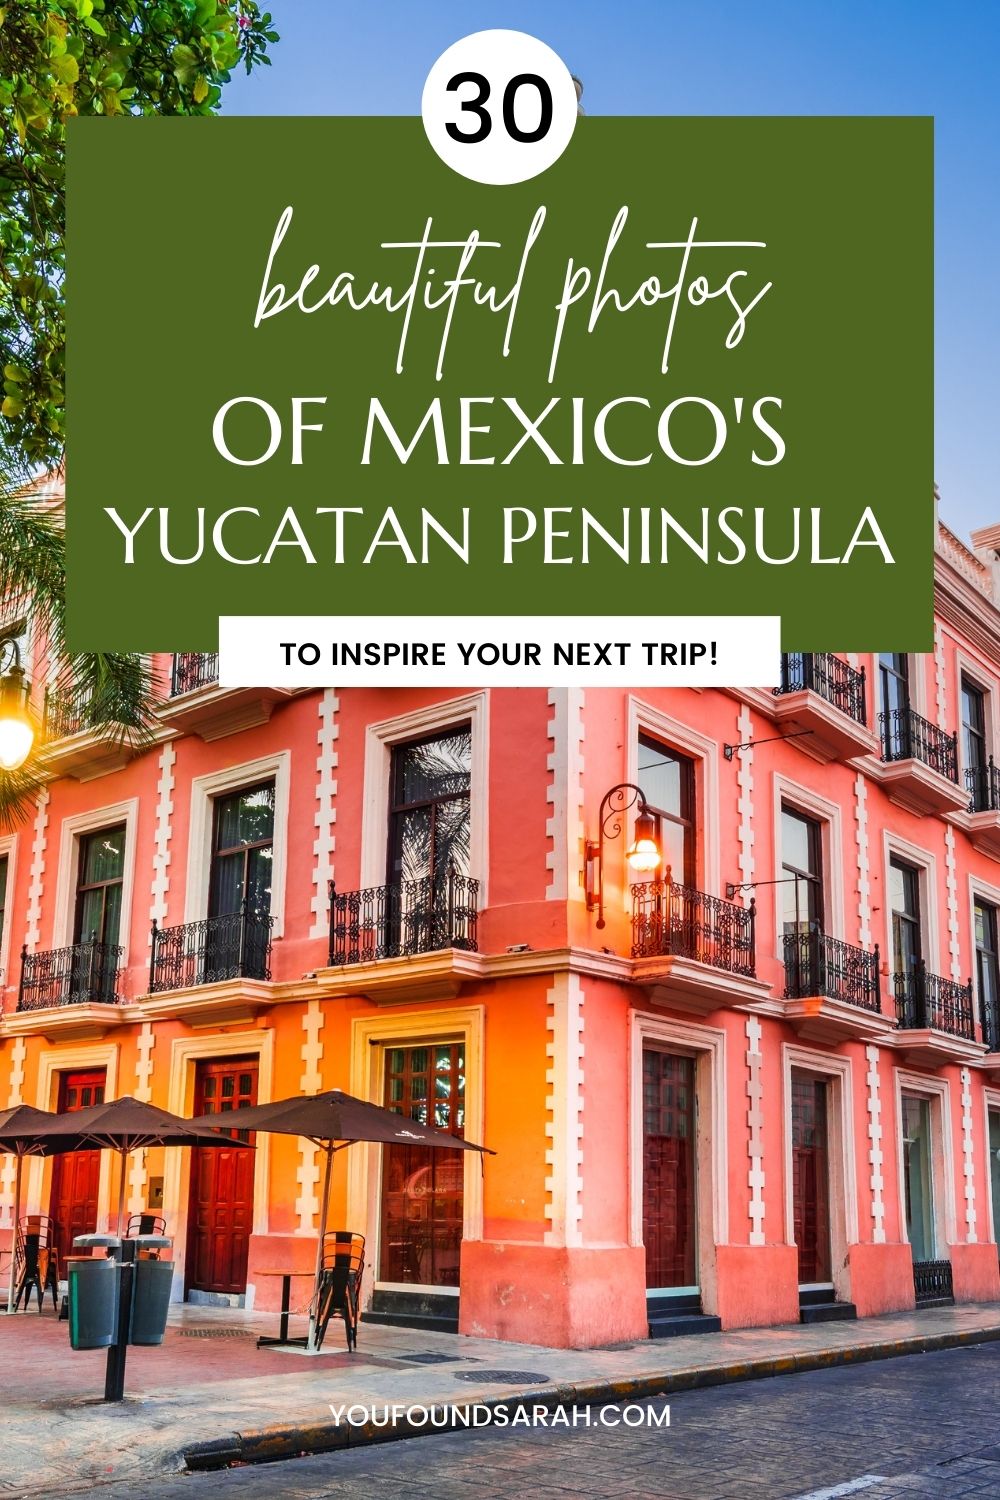 30 Photos to Inspire Your Travel to Mexico's Yucatan Peninsula #yucatan #visitmexico #cancun #merida